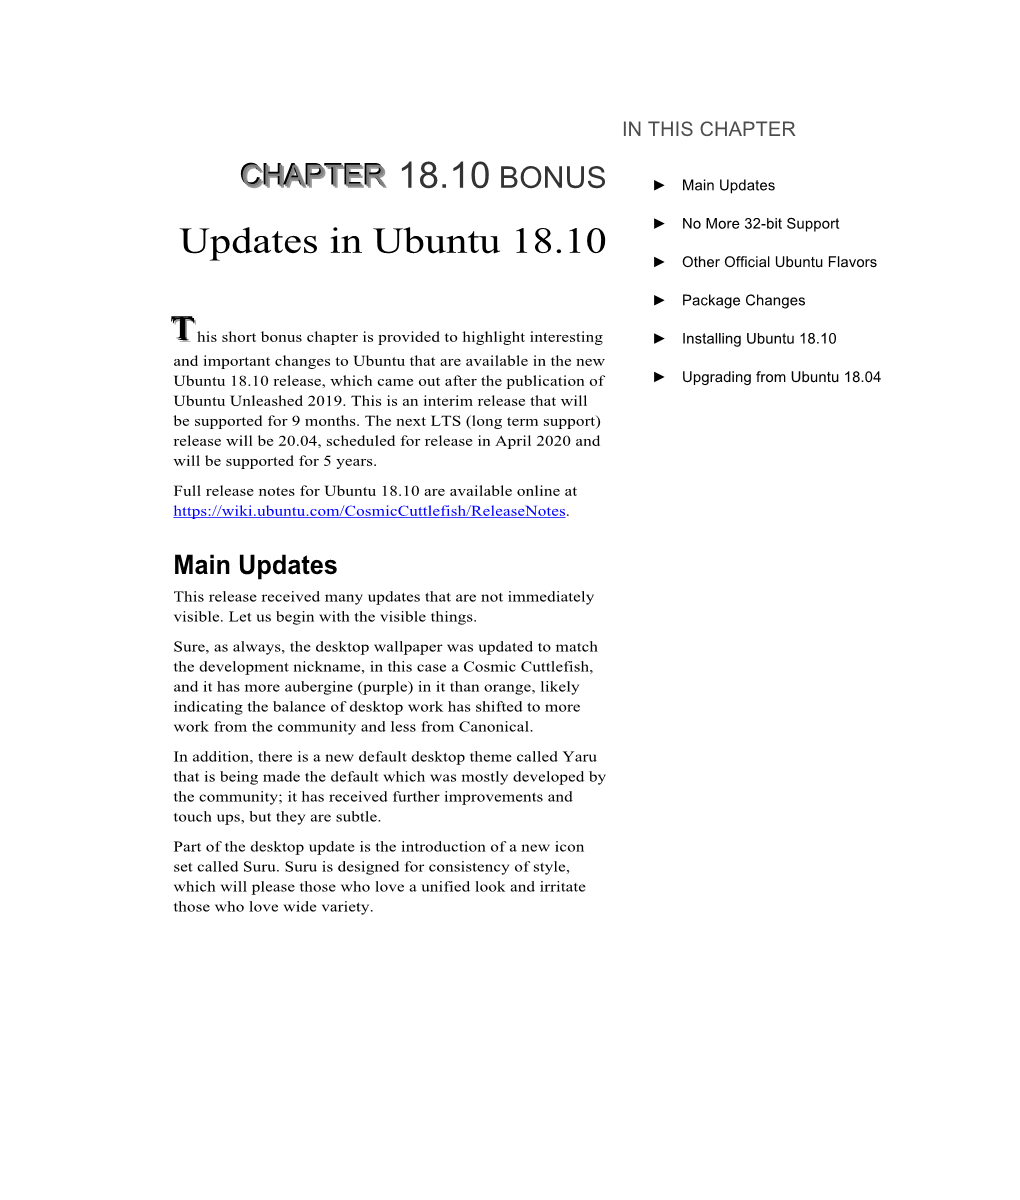 18.10 BONUS Updates in Ubuntu 18.10